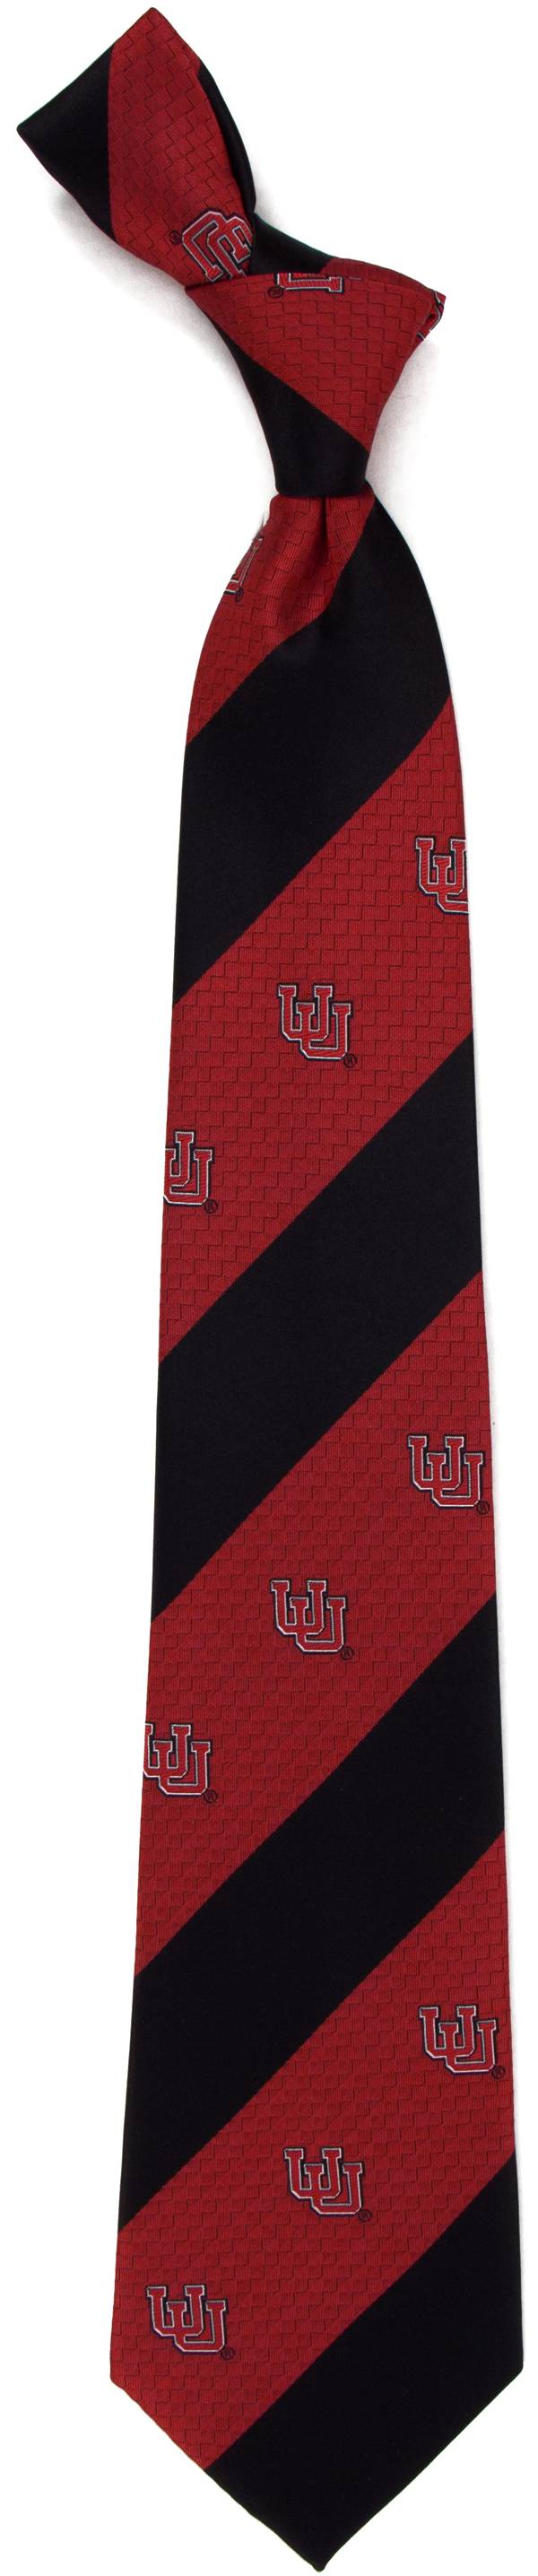 Eagles Wings Utah Utes Geo Stripe Necktie product image